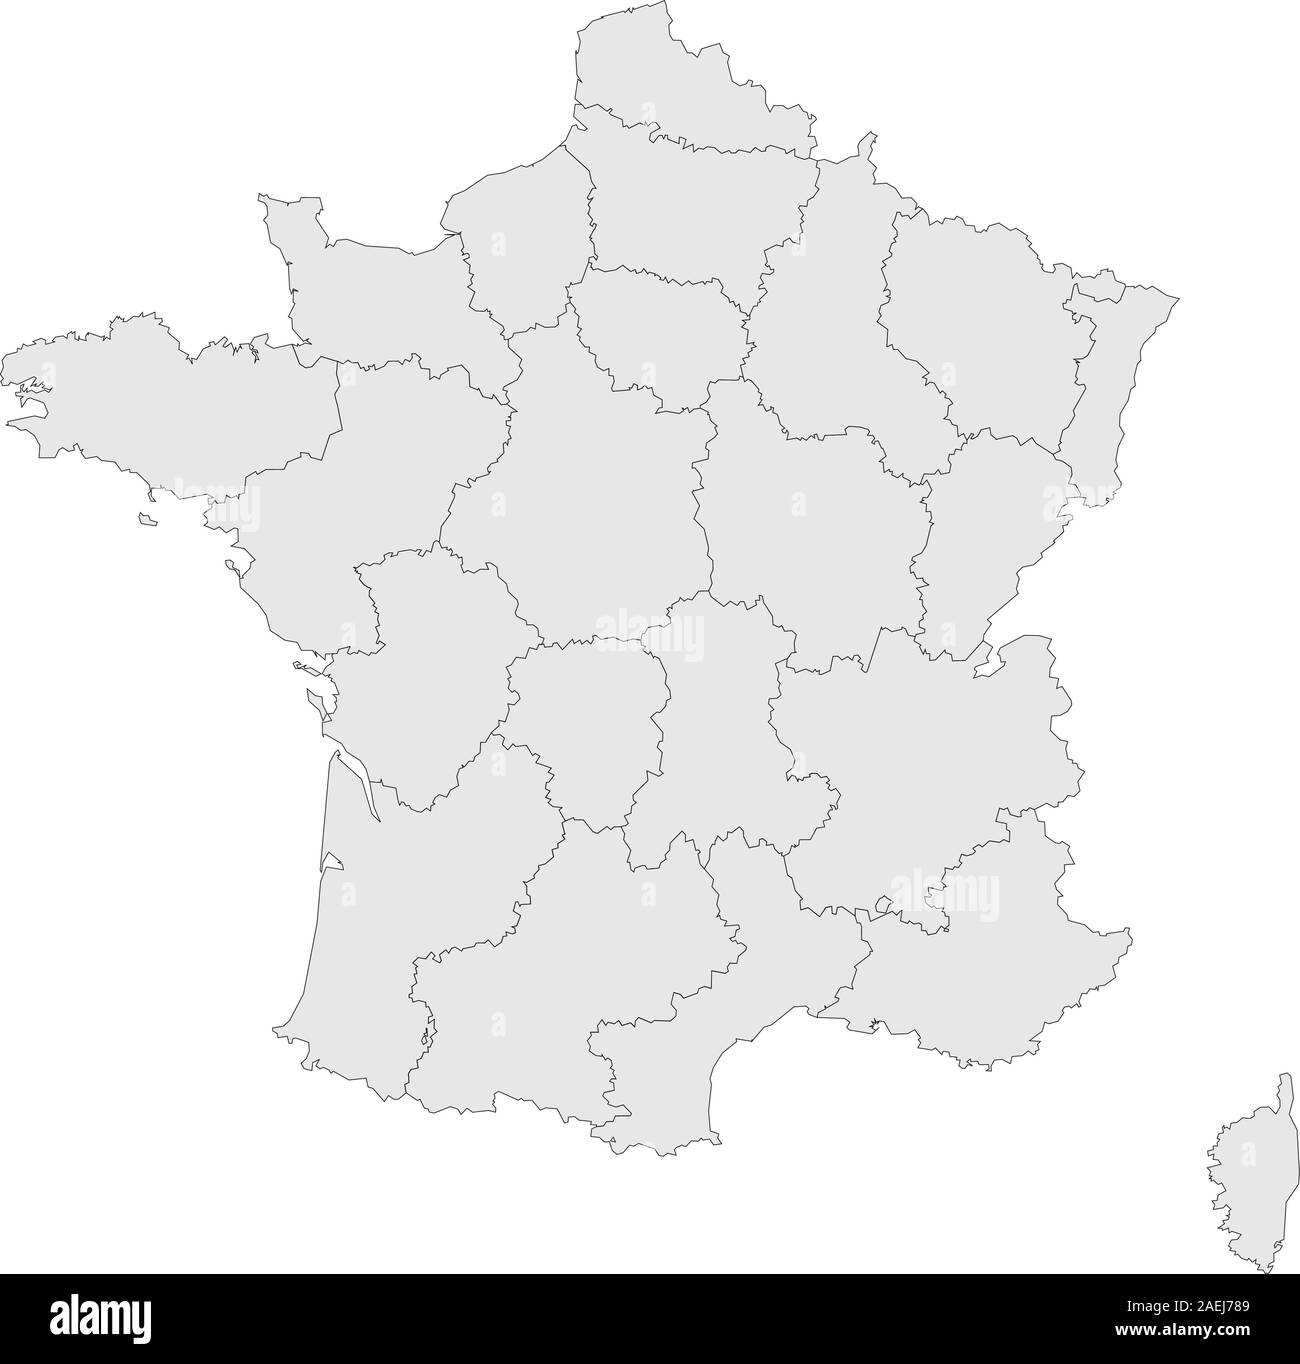 Mappa Francia province confini evidenziato illustrazione vettoriale. Colore grigio chiaro. Illustrazione Vettoriale